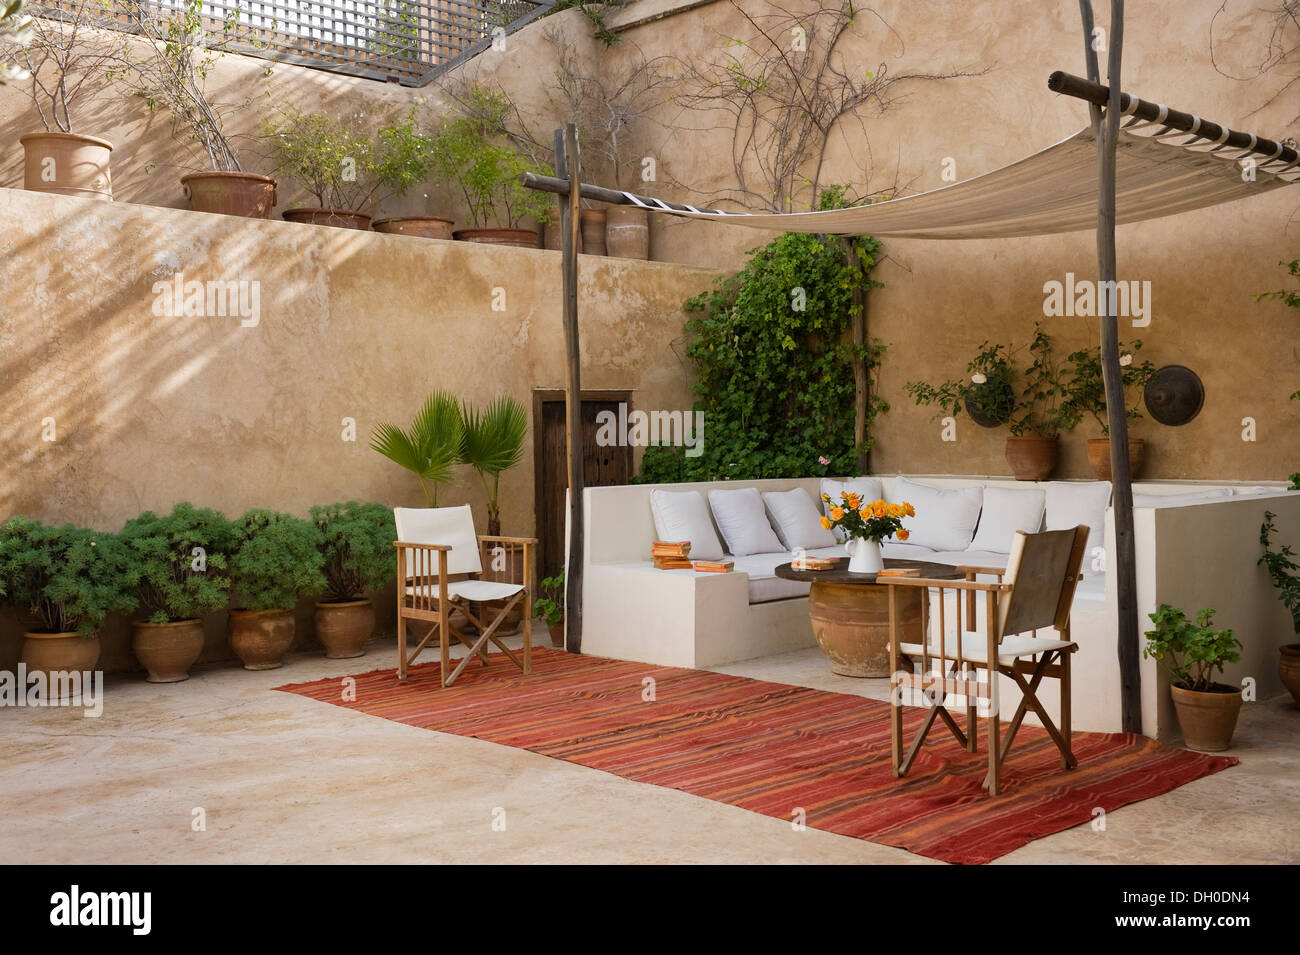 Marokkanischen Innenhof-Garten mit überdachter Sitzecke Stockfoto